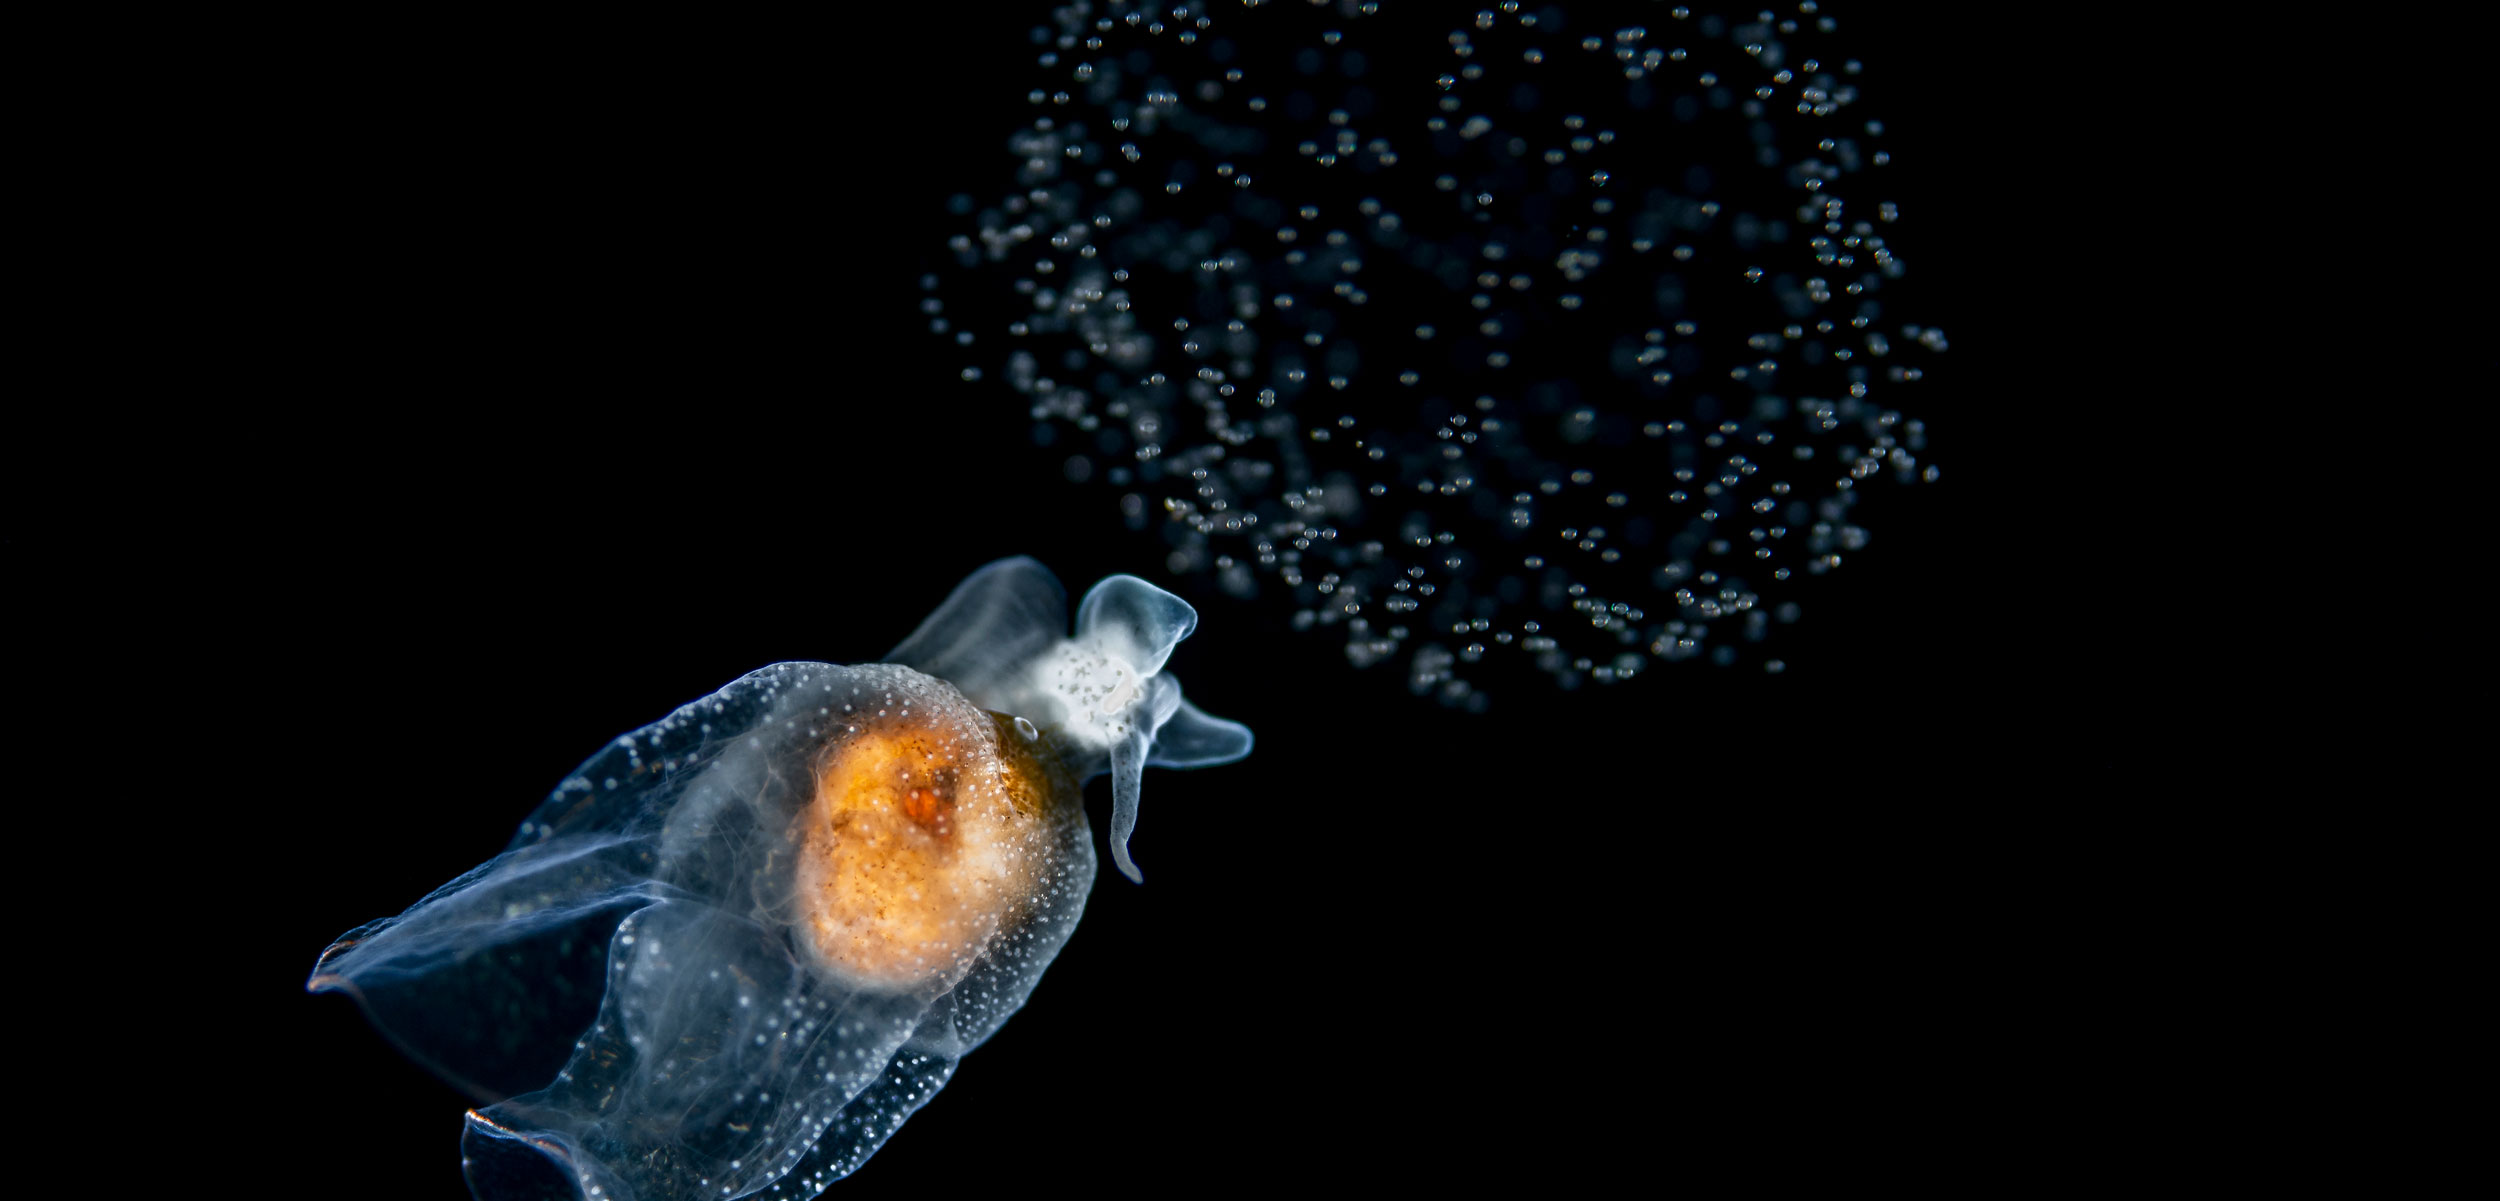 pteropod releasing eggs